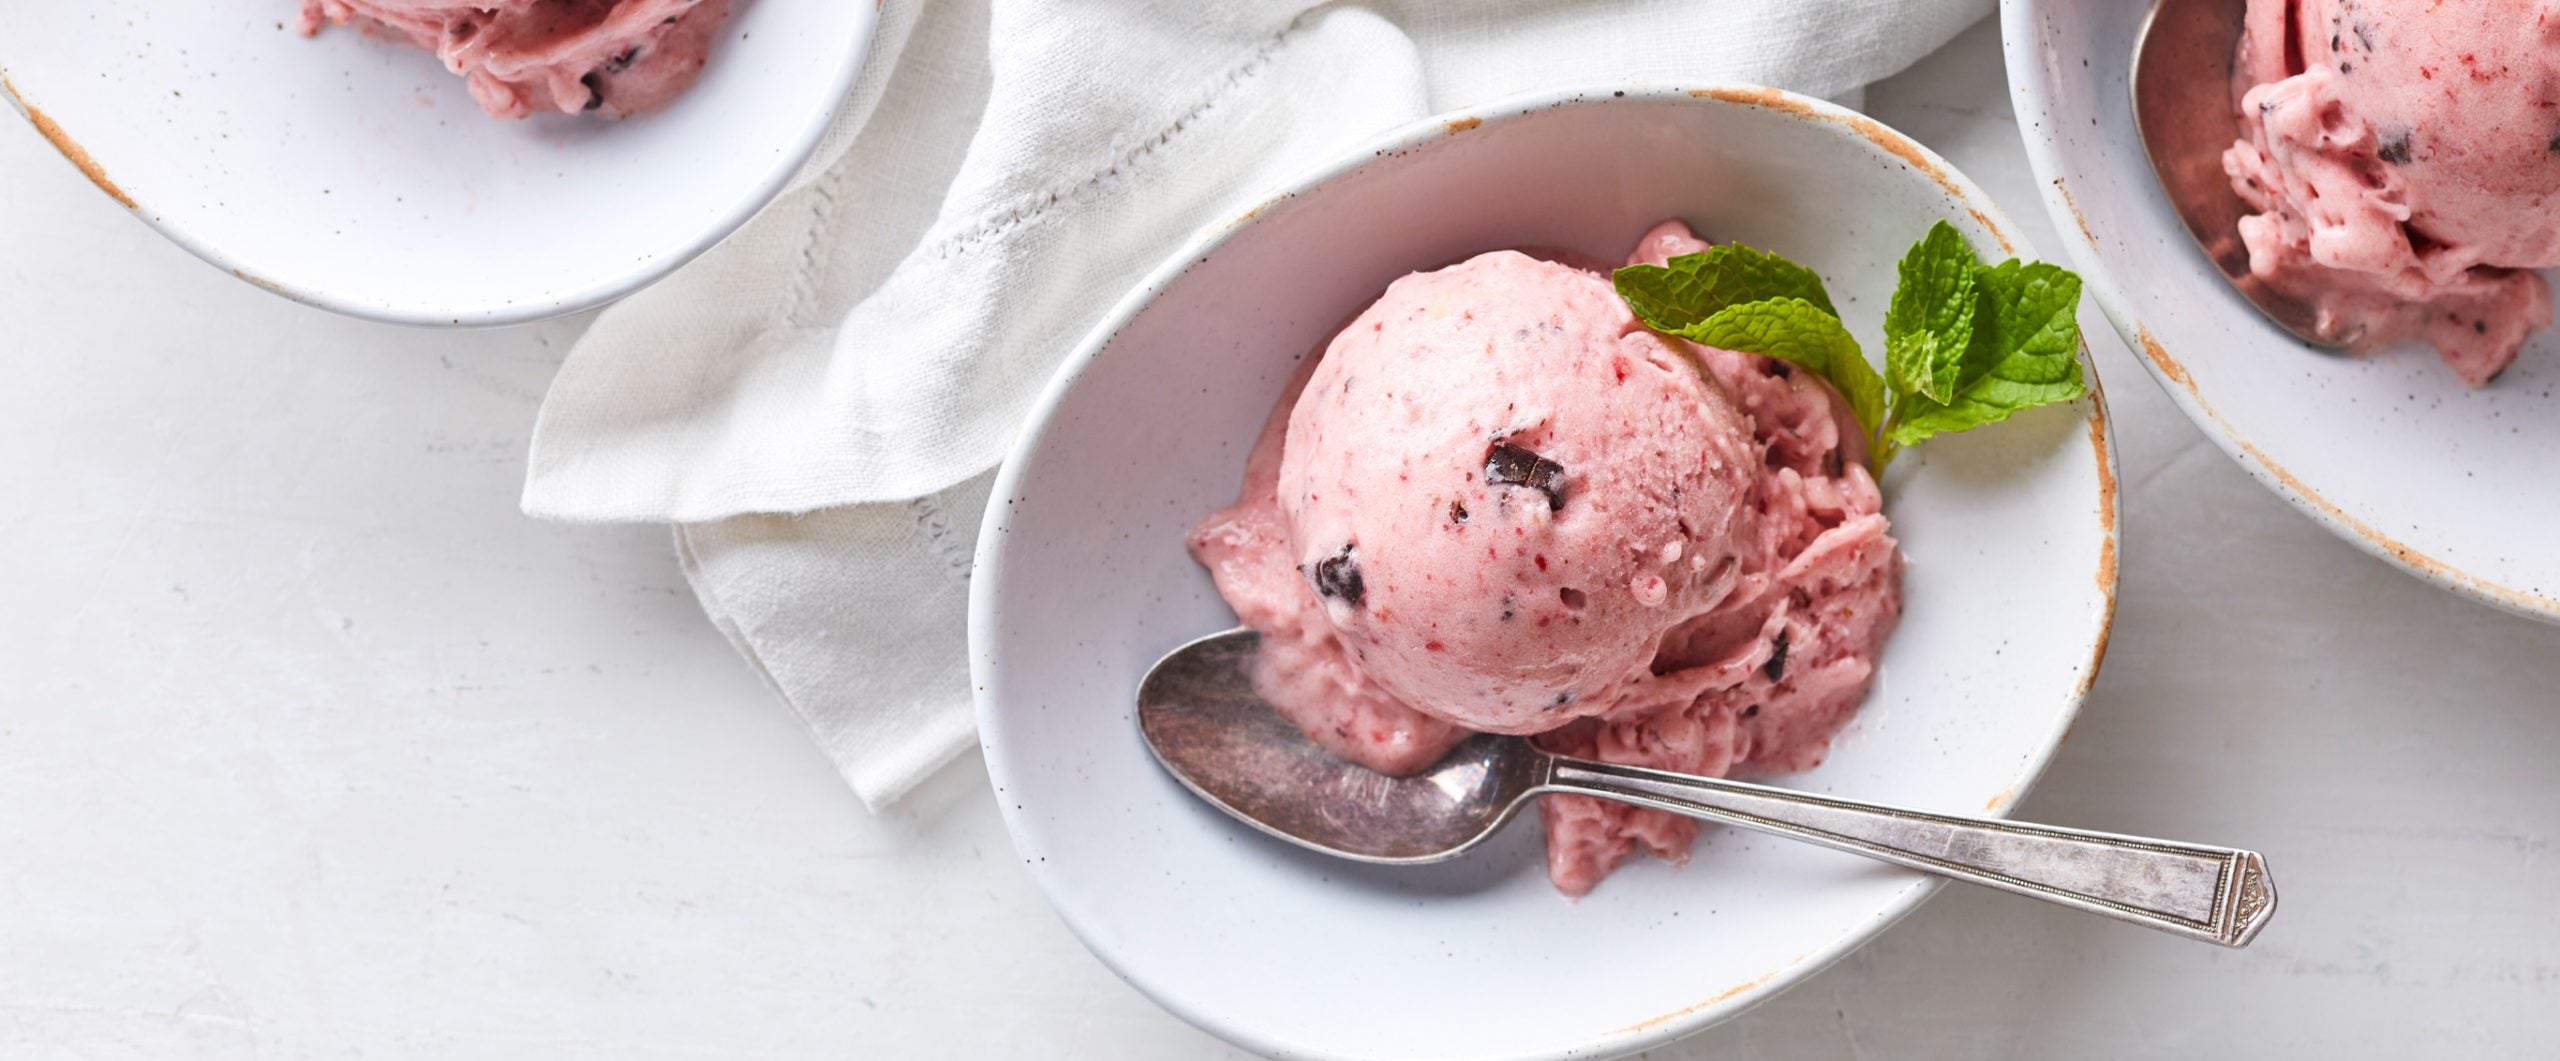 The 15+ Best Vegan Ice Creams  FN Dish - Behind-the-Scenes, Food